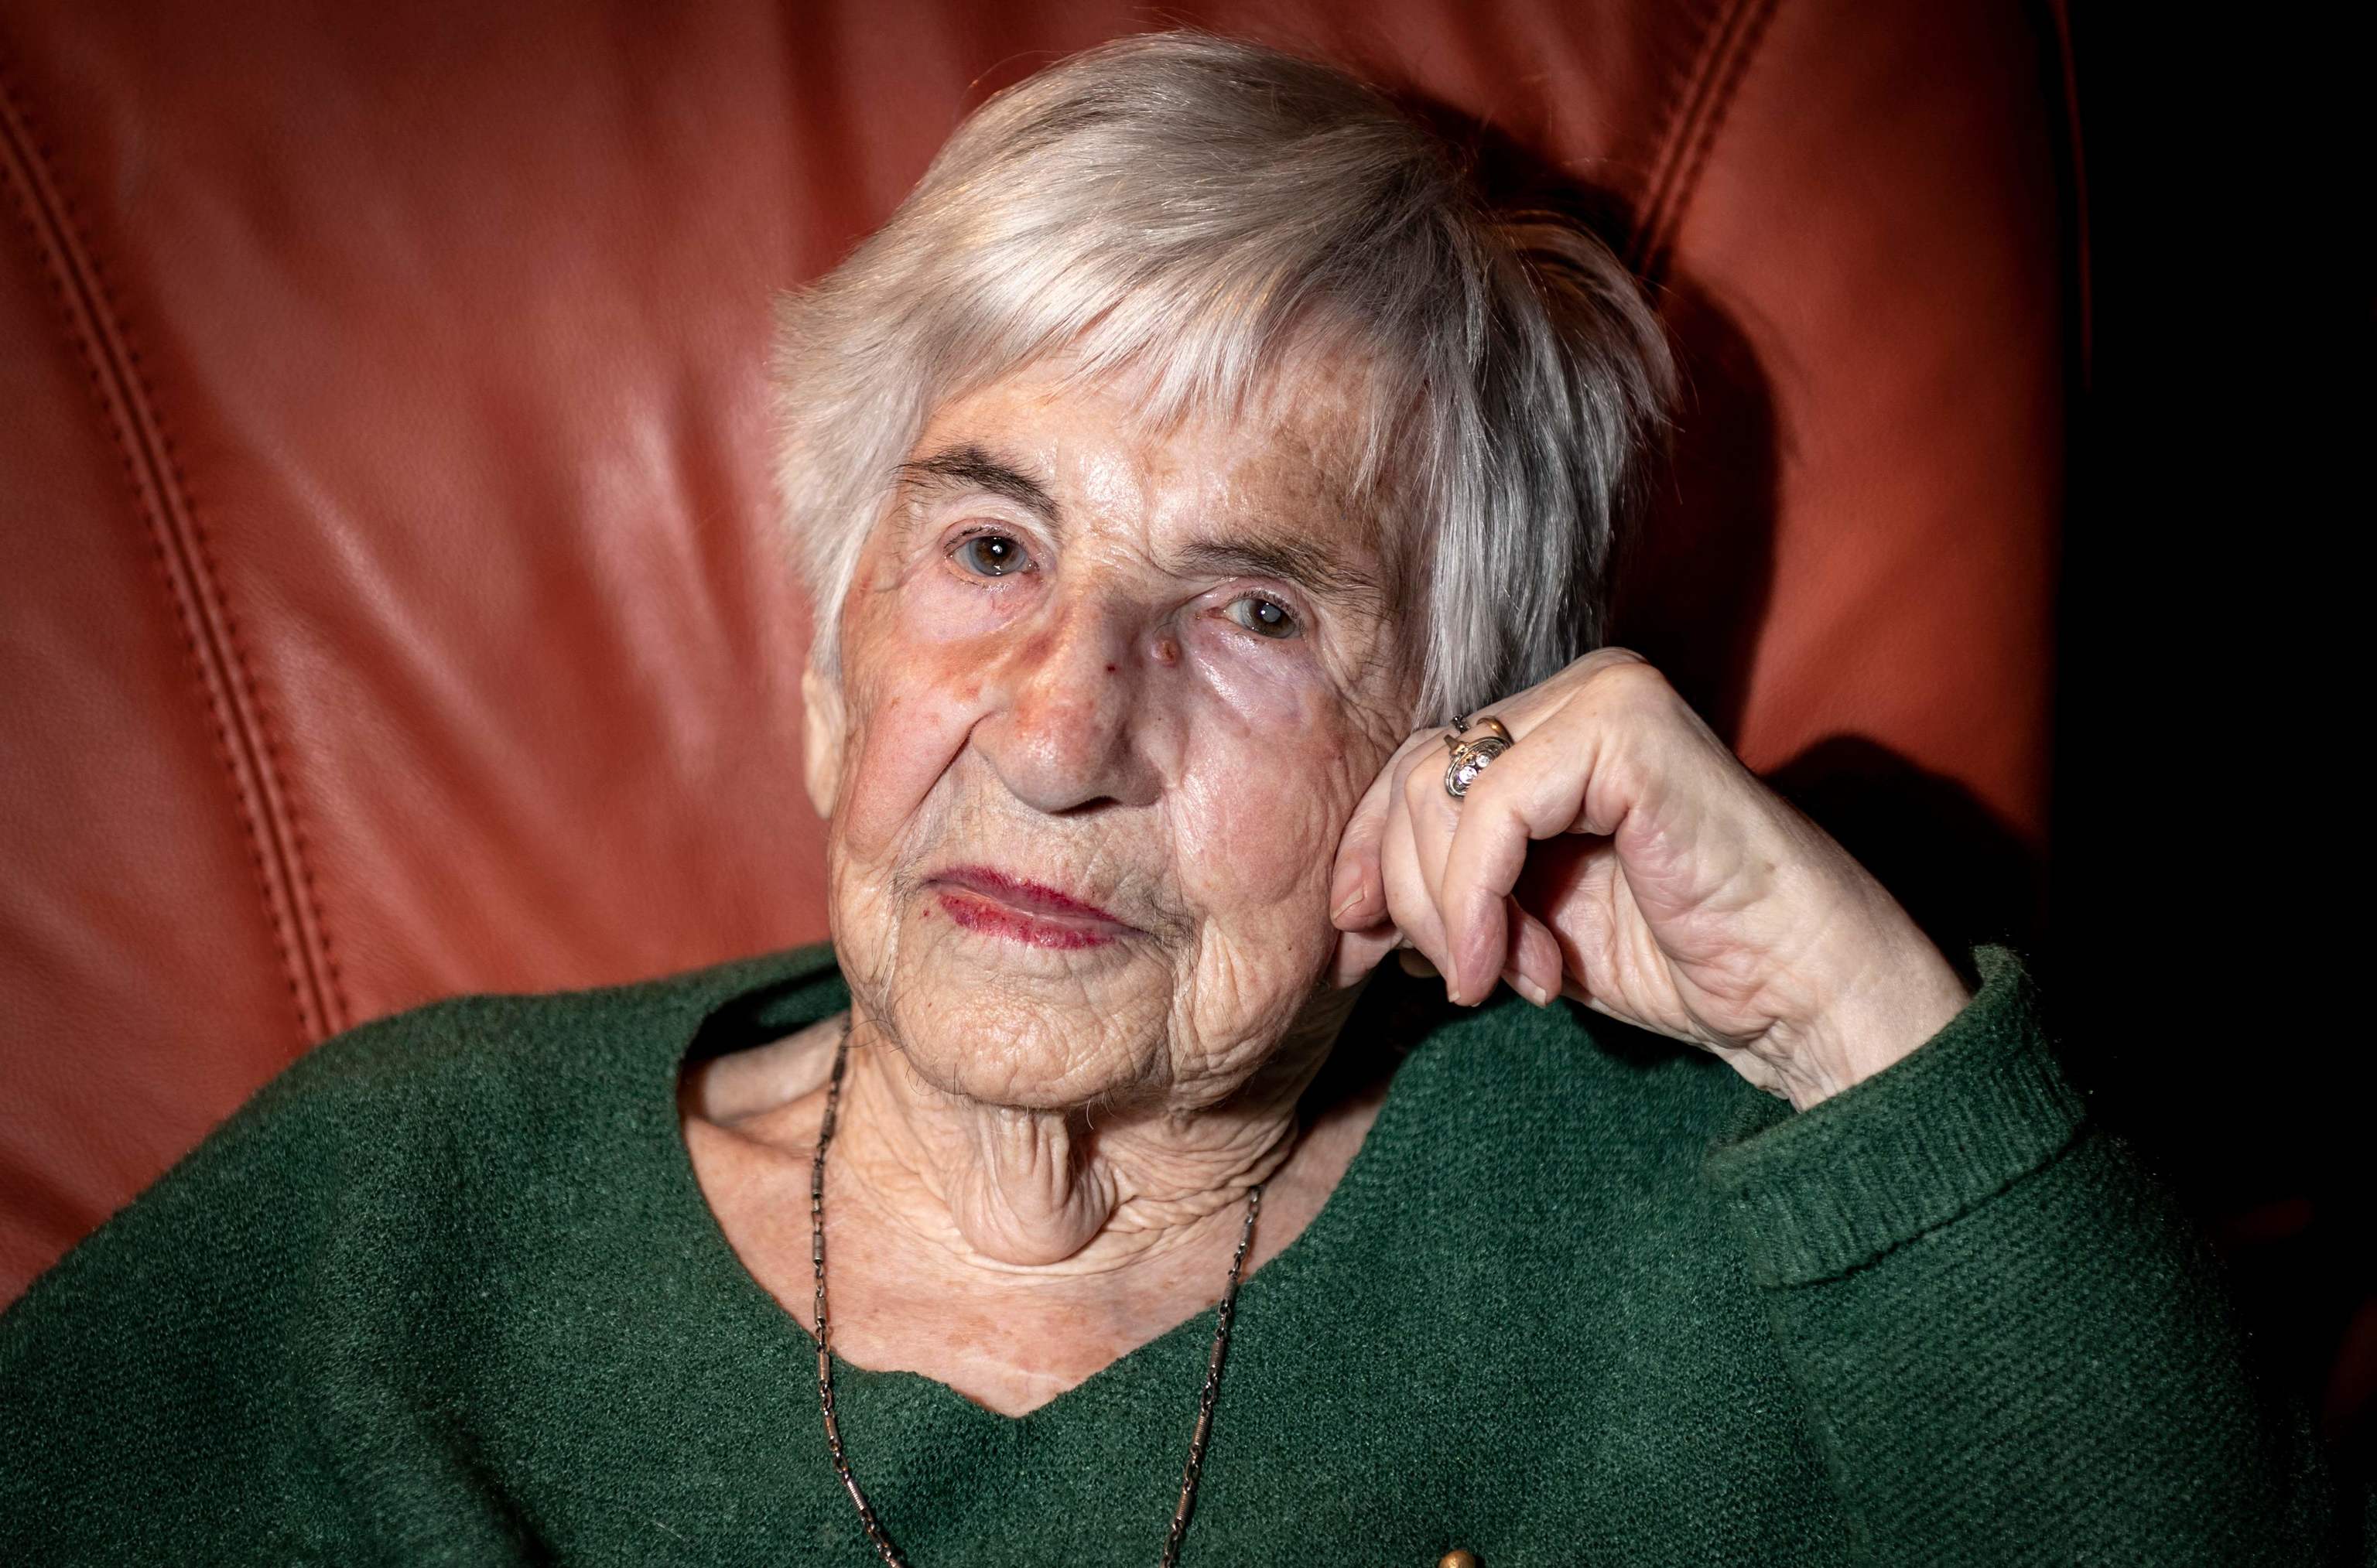 foto de archivo tomada el 08 de diciembre de 2019 Esther Bejarano, superviviente del Holocausto y de la Orquesta de Mujeres de Auschwitz, es fotografiada durante una entrevista en su piso de Hamburgo, en el norte de Alemania.